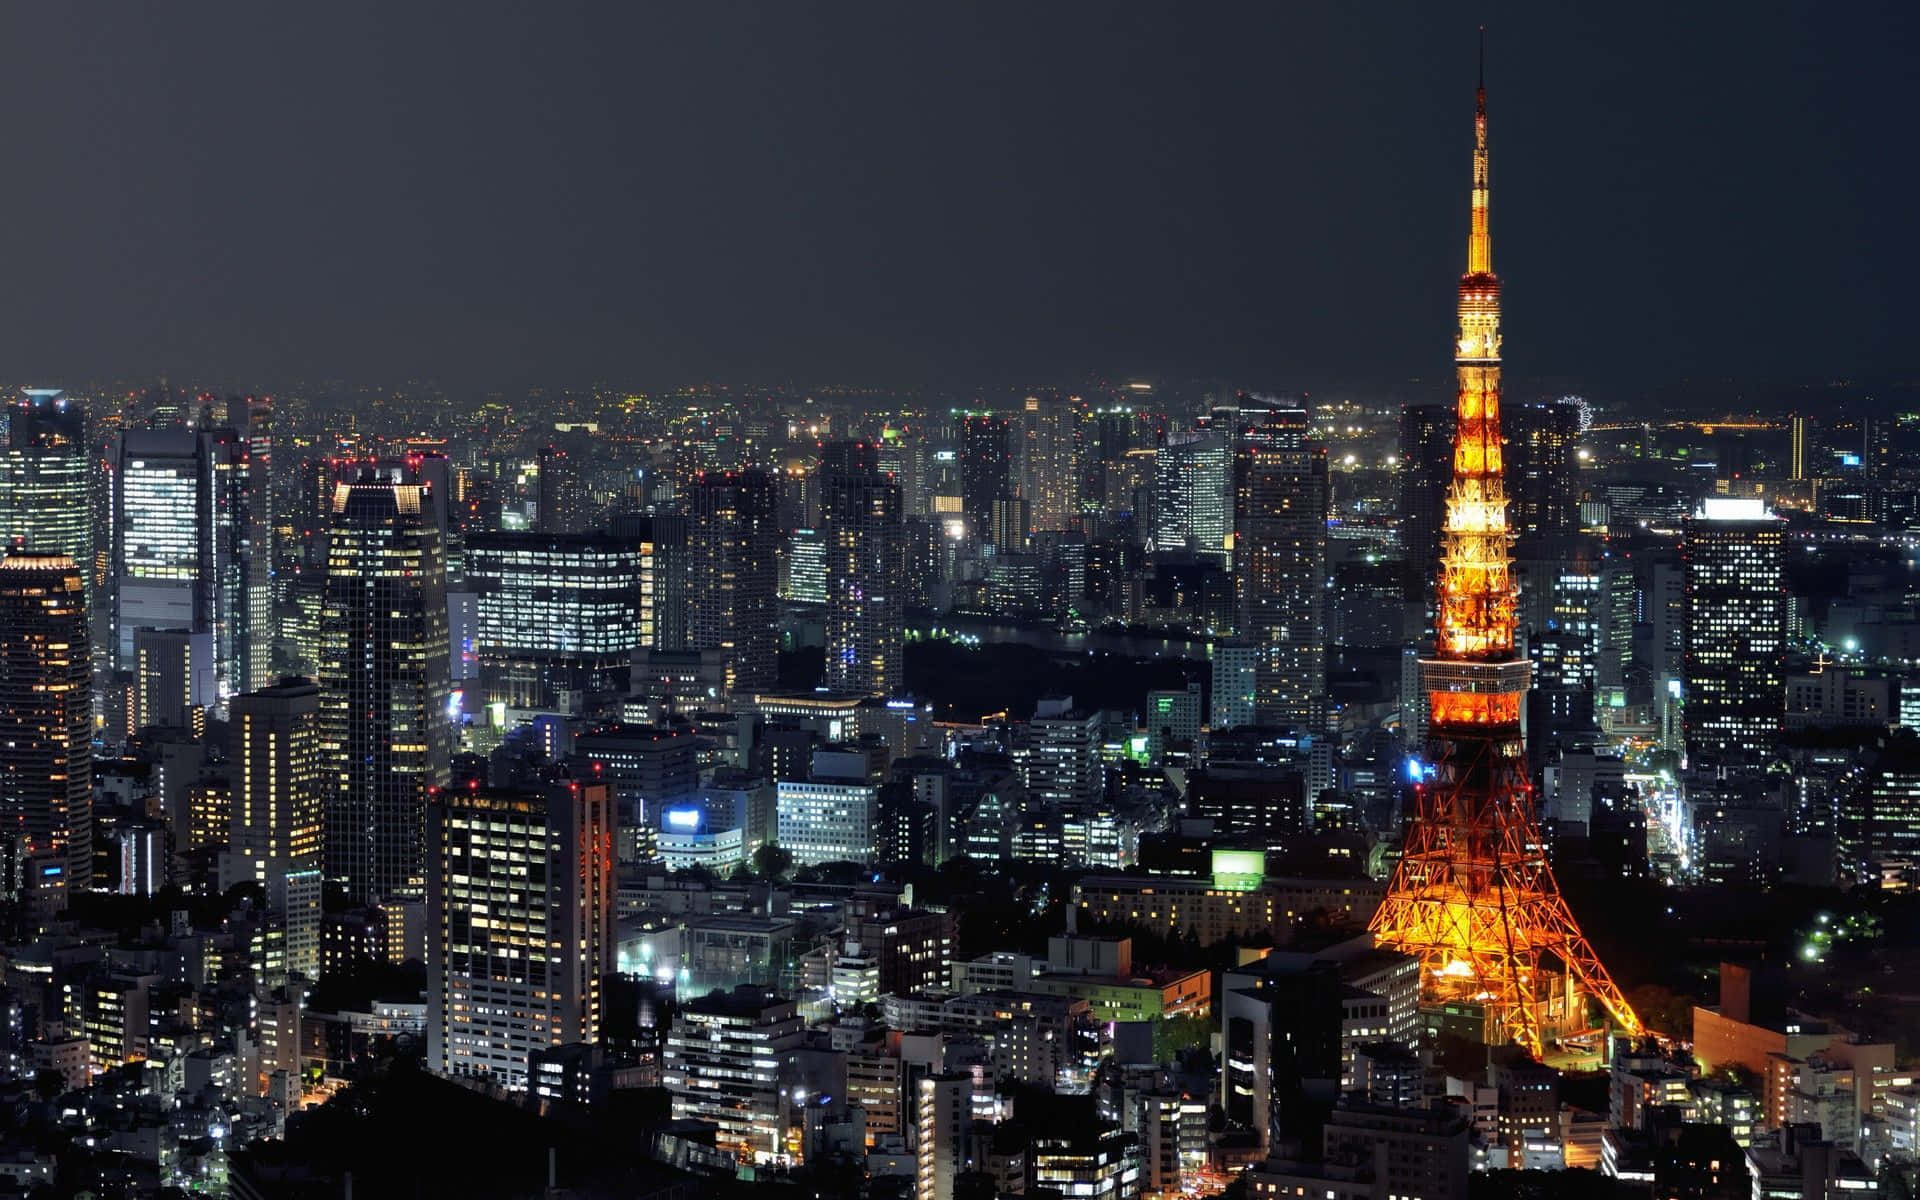 Hintergrundvon Tokyo Helle Beleuchtete Tokioturm